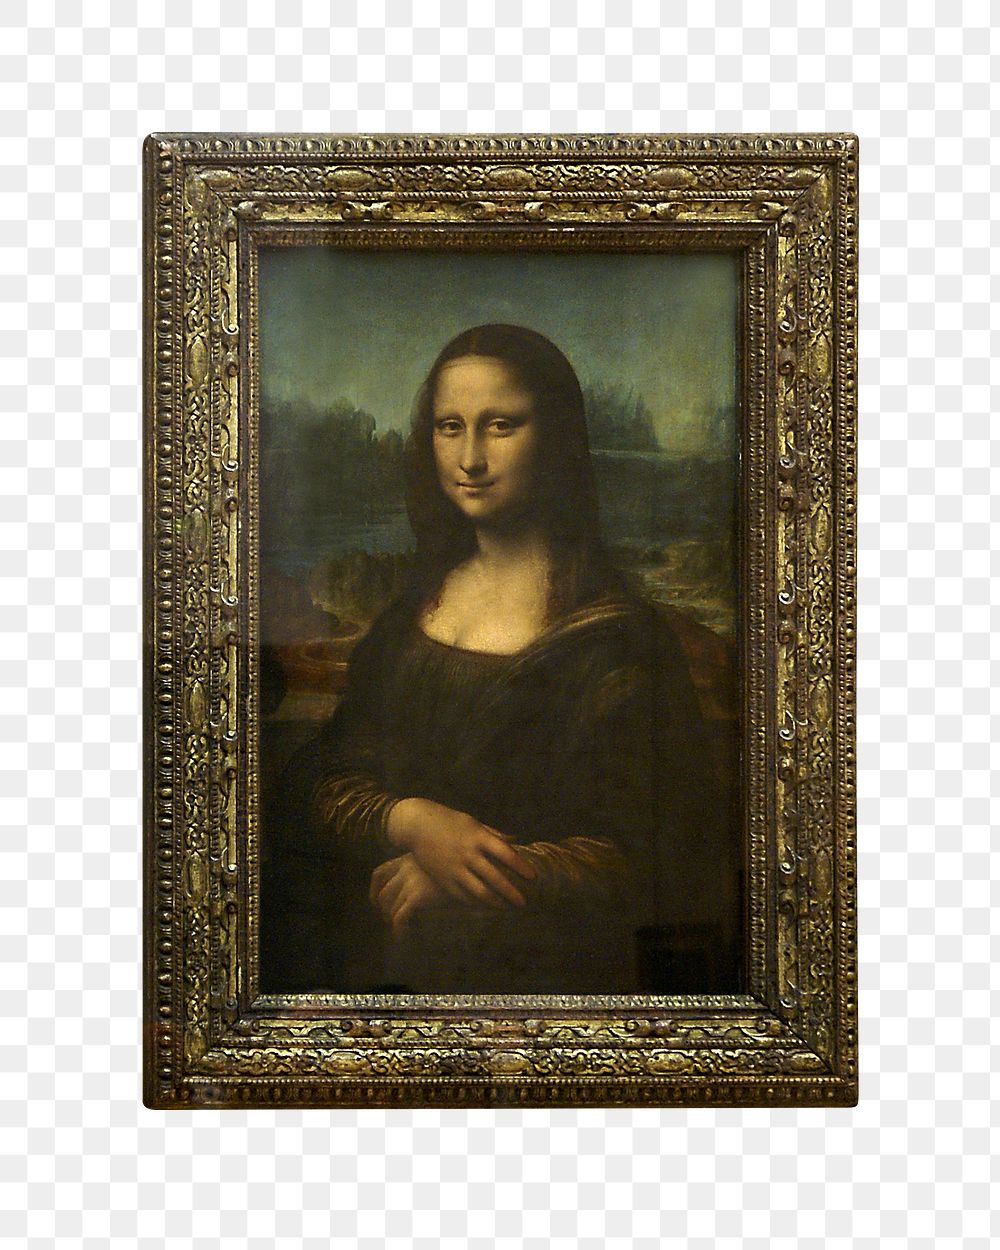 Mona Lisa frame png sticker, transparent background